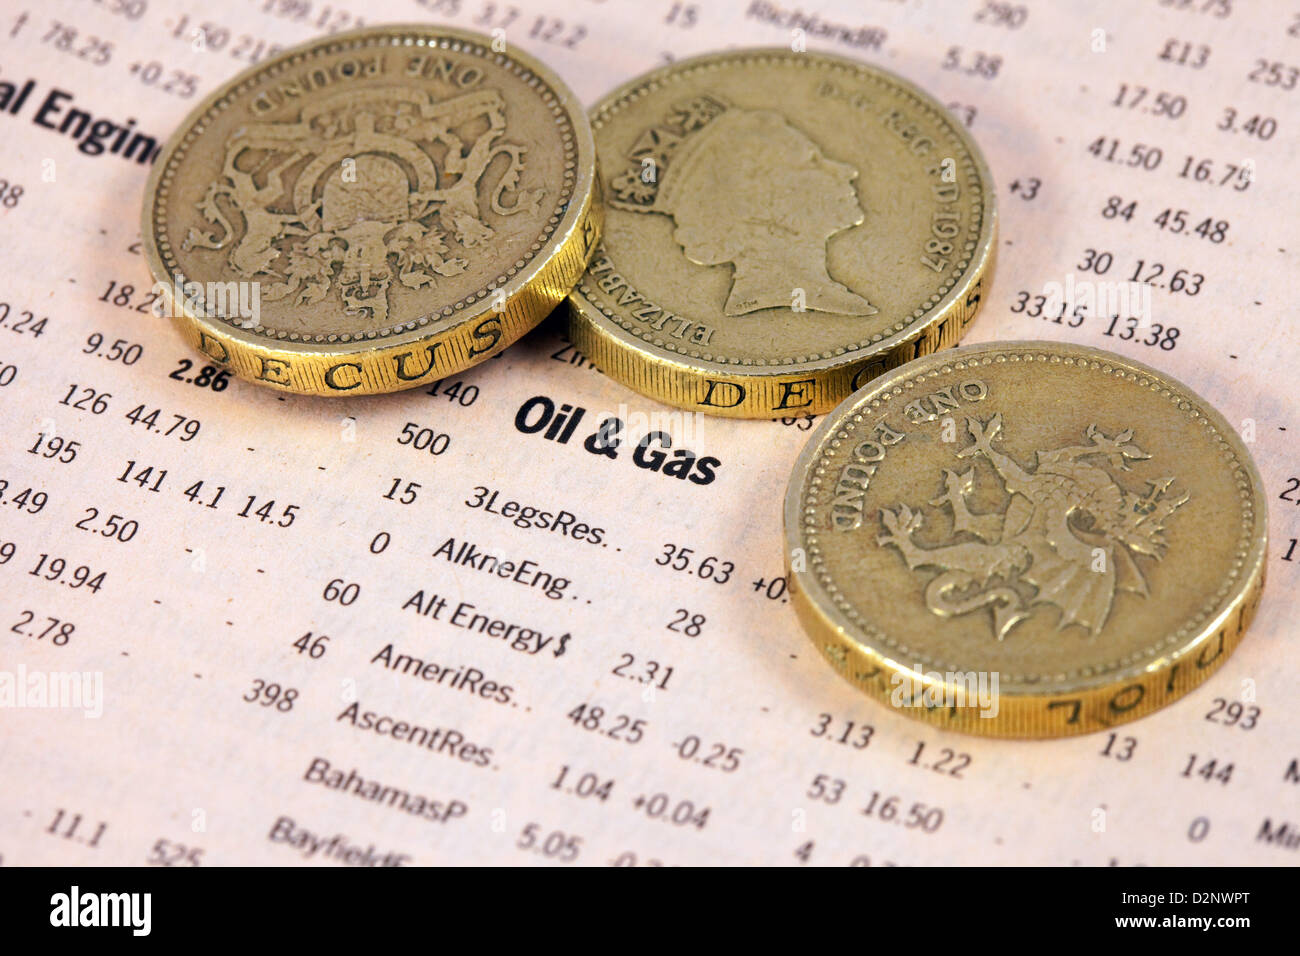 Öl und Gas Aktienwerte aufgeführt in der Financial Times mit Pfund-Münzen - Konzept der Öl-Geld Stockfoto